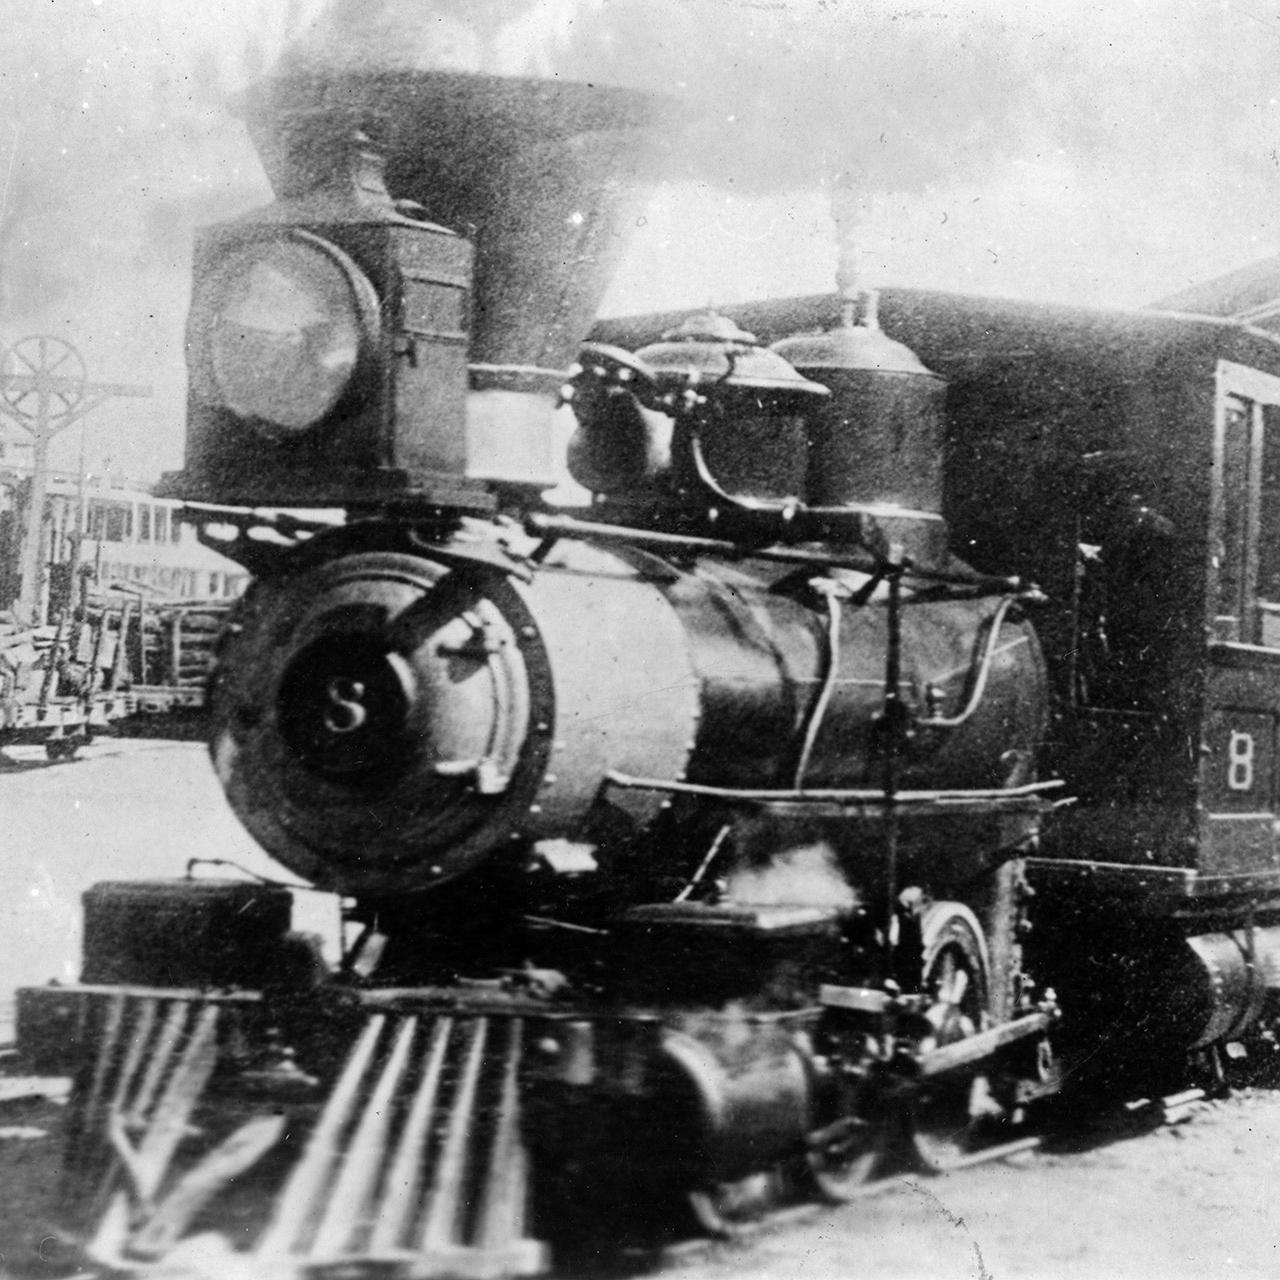 NPC-8-Sausalito-1890s